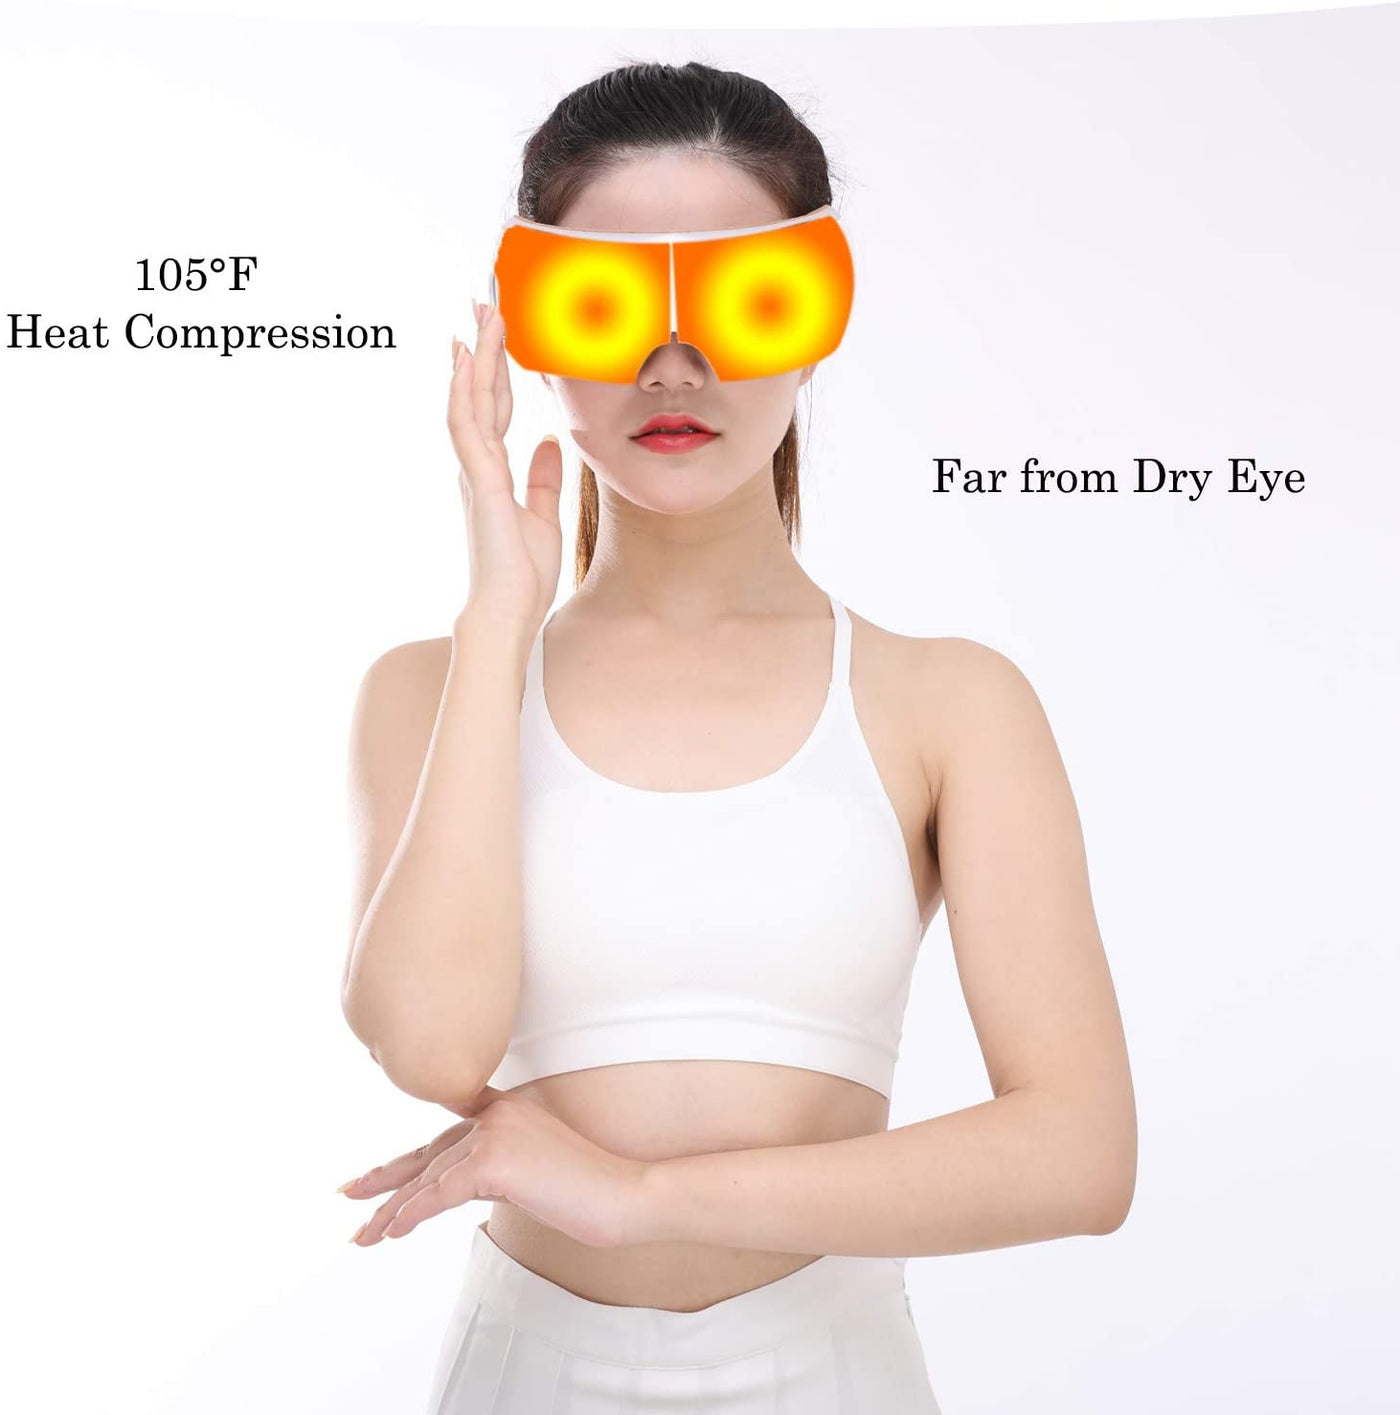 HEZHENG Elektrisches tragbares Augenmassagegerät mit Wärme zur Linderung trockener Augenermüdung, Luftkompressions-Shiatsu-Massage gegen Augenringe, Vibration und Musik zur Linderung von Augenstress (größere Größe) HZ-QNA-1 